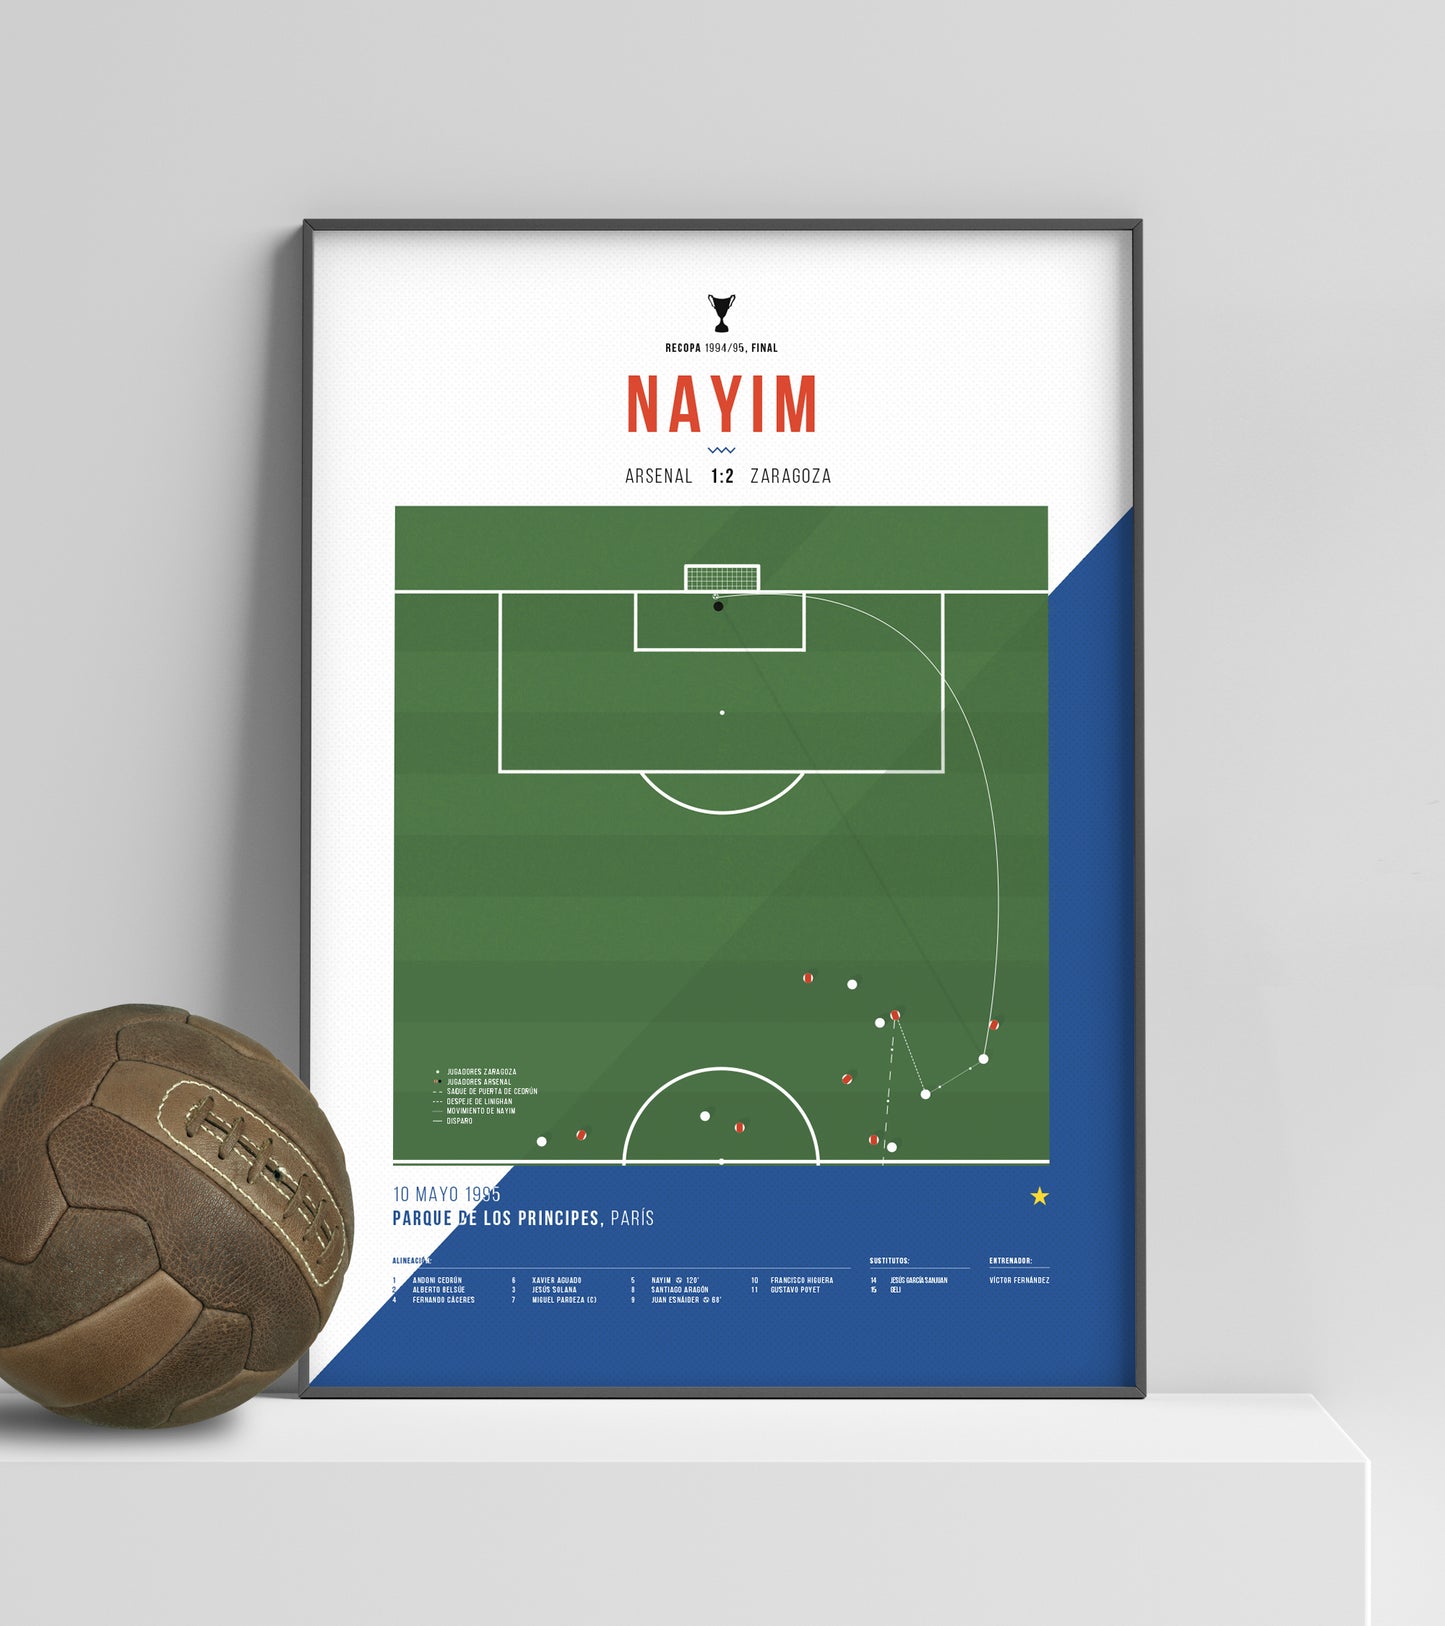 Le but de Nayim qui a fait de Saragosse le champion de la Coupe des vainqueurs de coupe